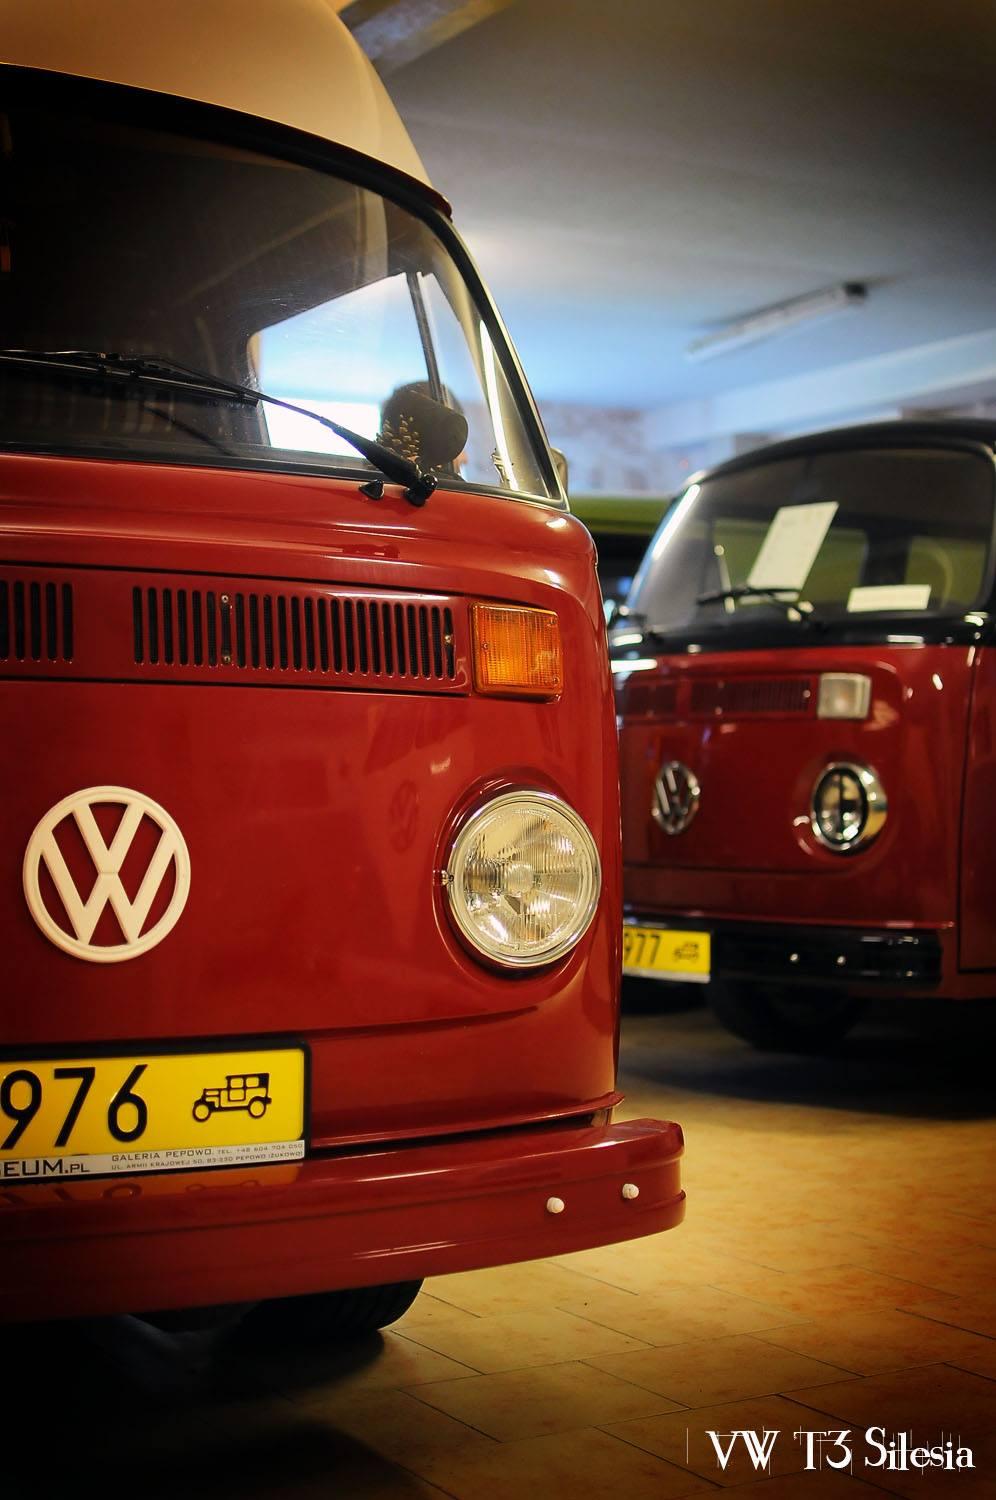 Pępowo - Volkswagen Museum – image 1